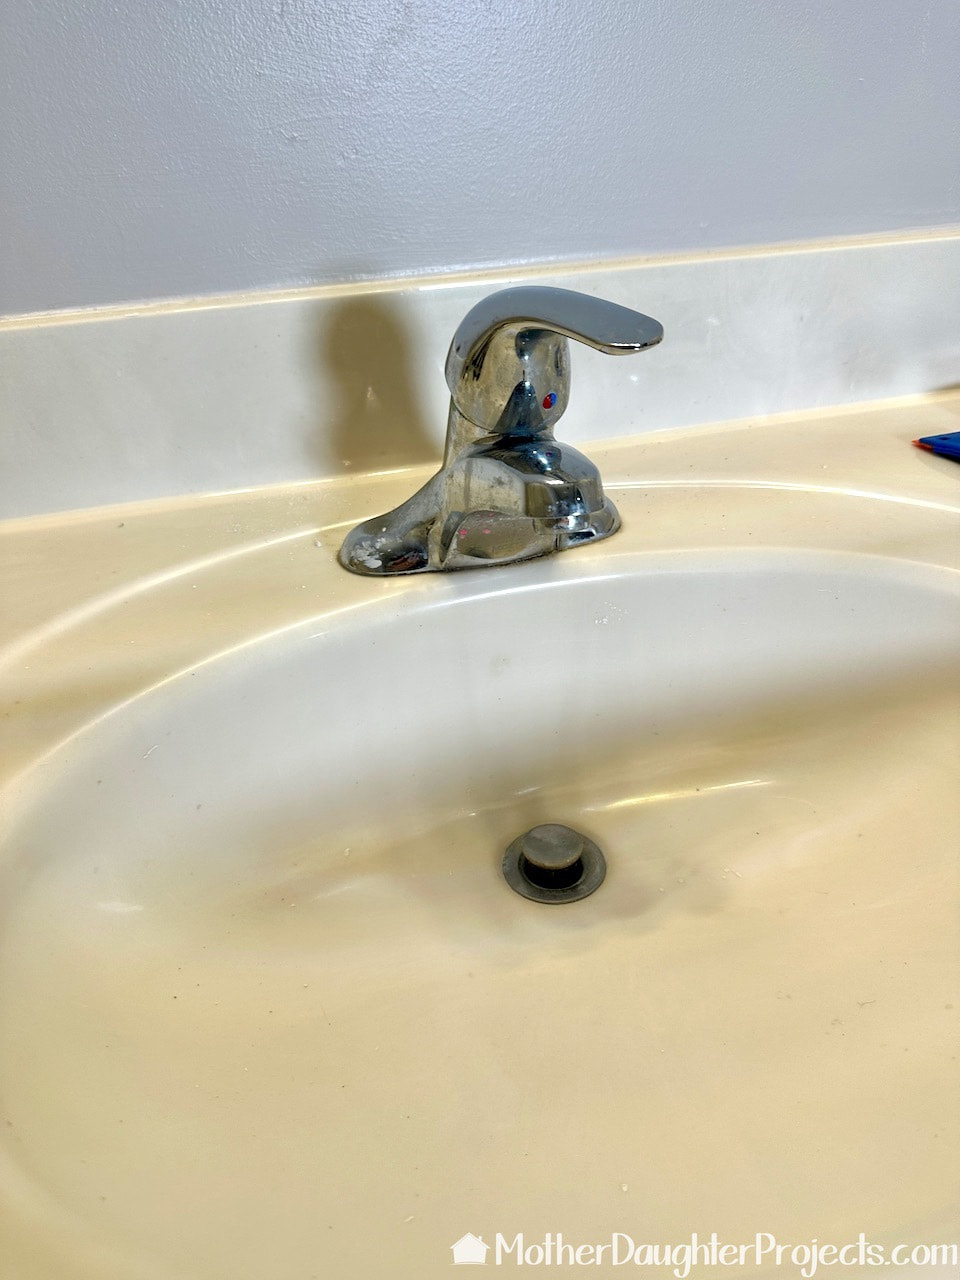 The original single handle half bath faucet is by Delta.